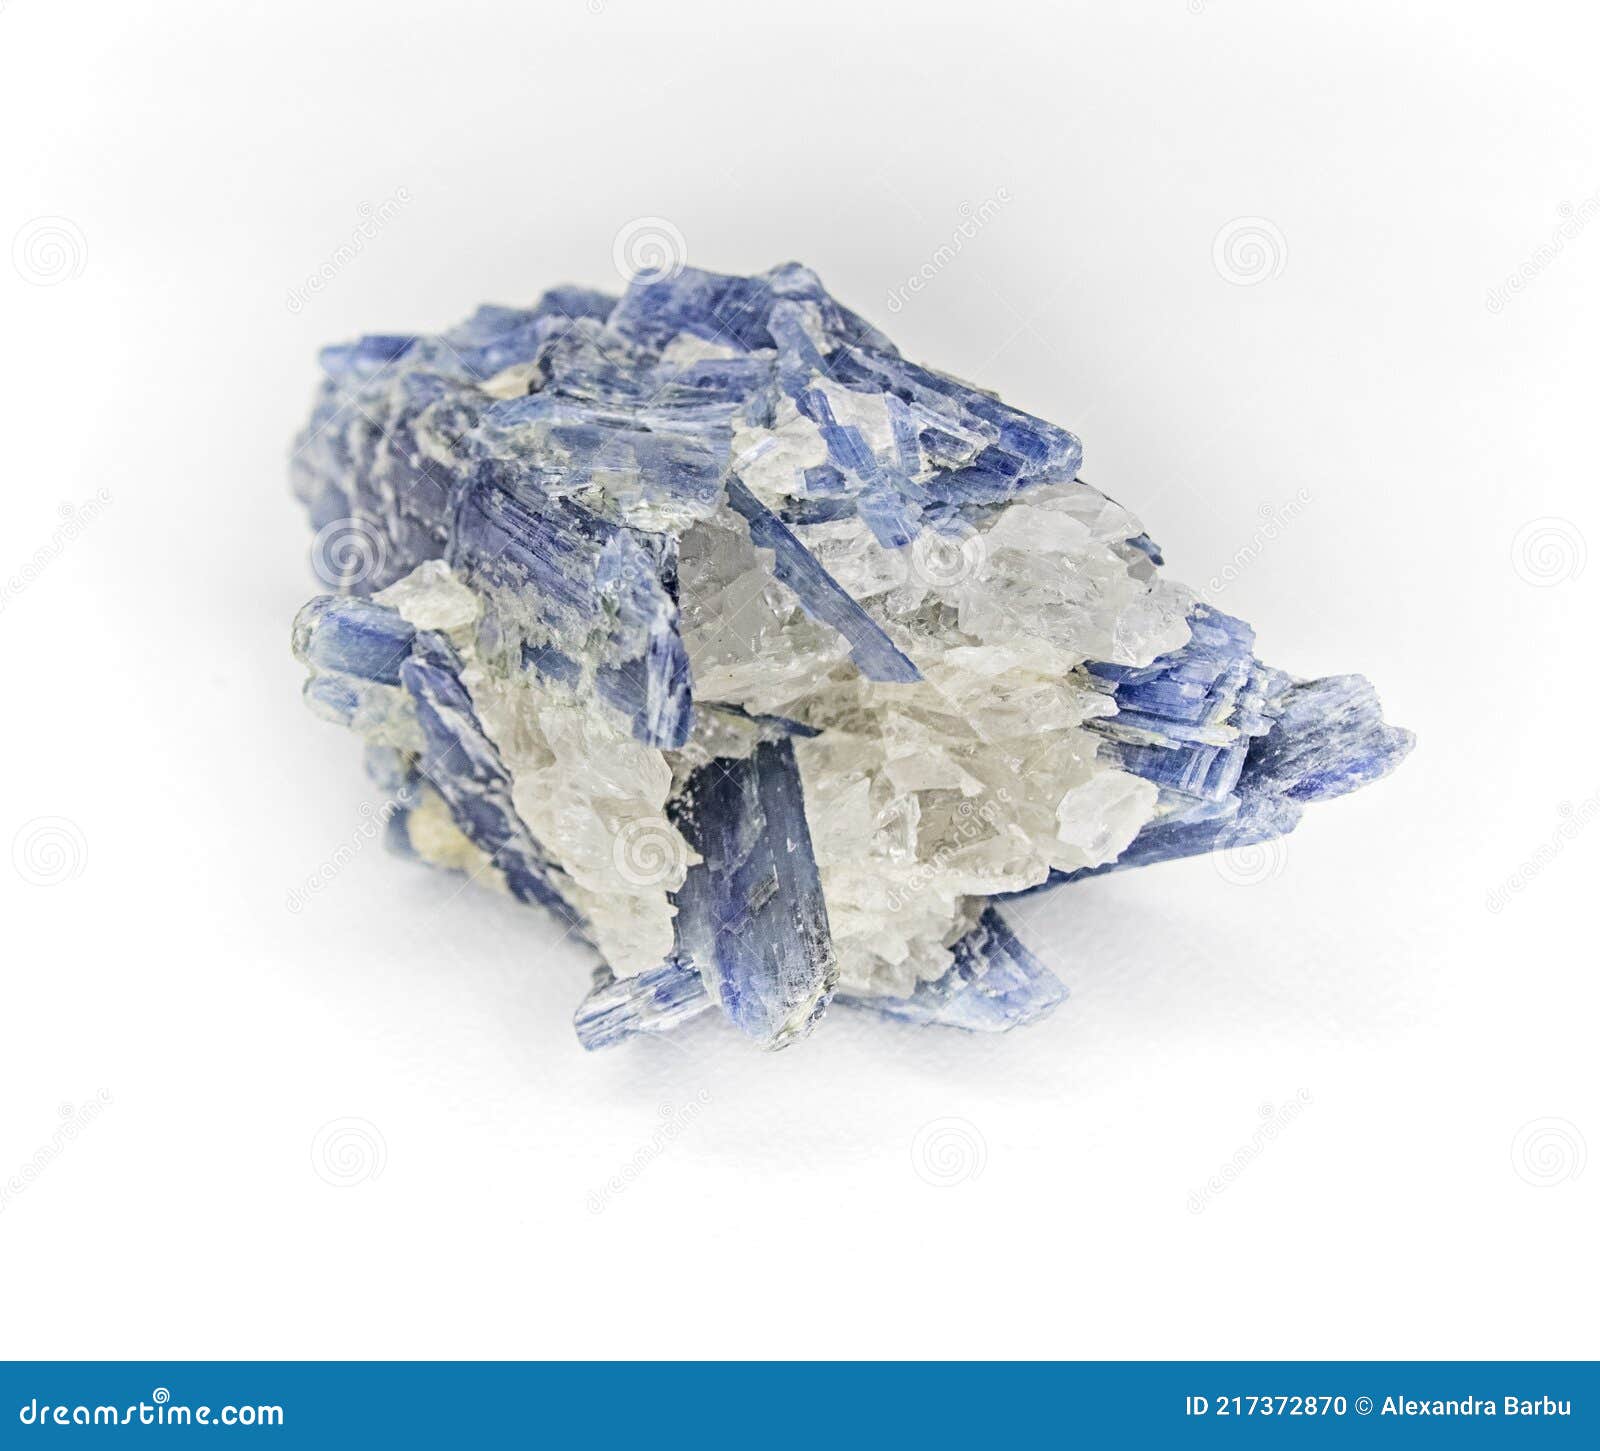 蓝晶石矿石_Kyanite Ore_国家岩矿化石标本资源共享平台